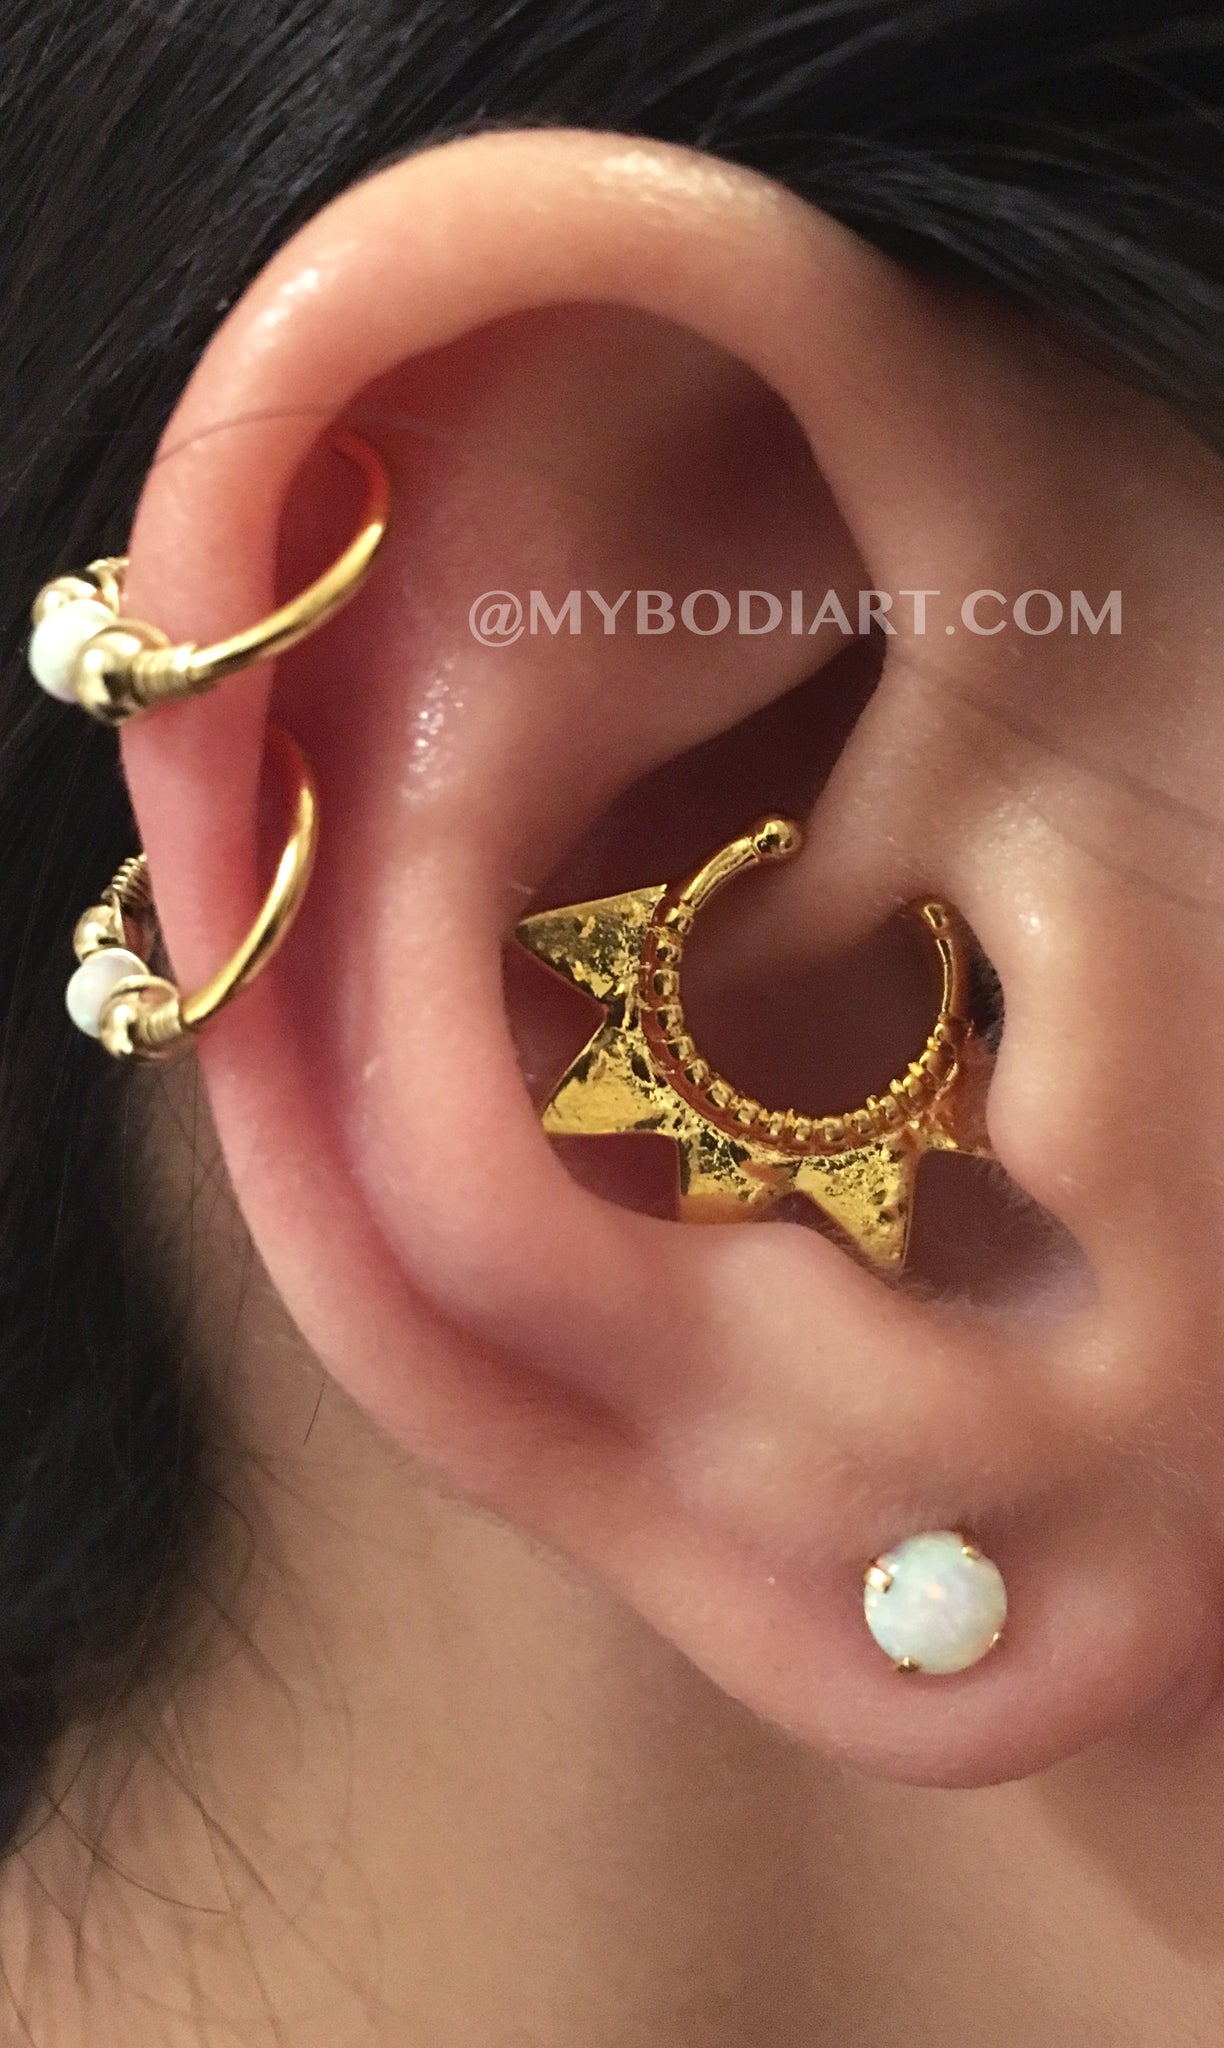  la perforación del oído - Badass Ear Piercing Ideas - Double Cartilage Ring Hoop - Opal Lobe Earring Studs - www.MyBodiArt.com